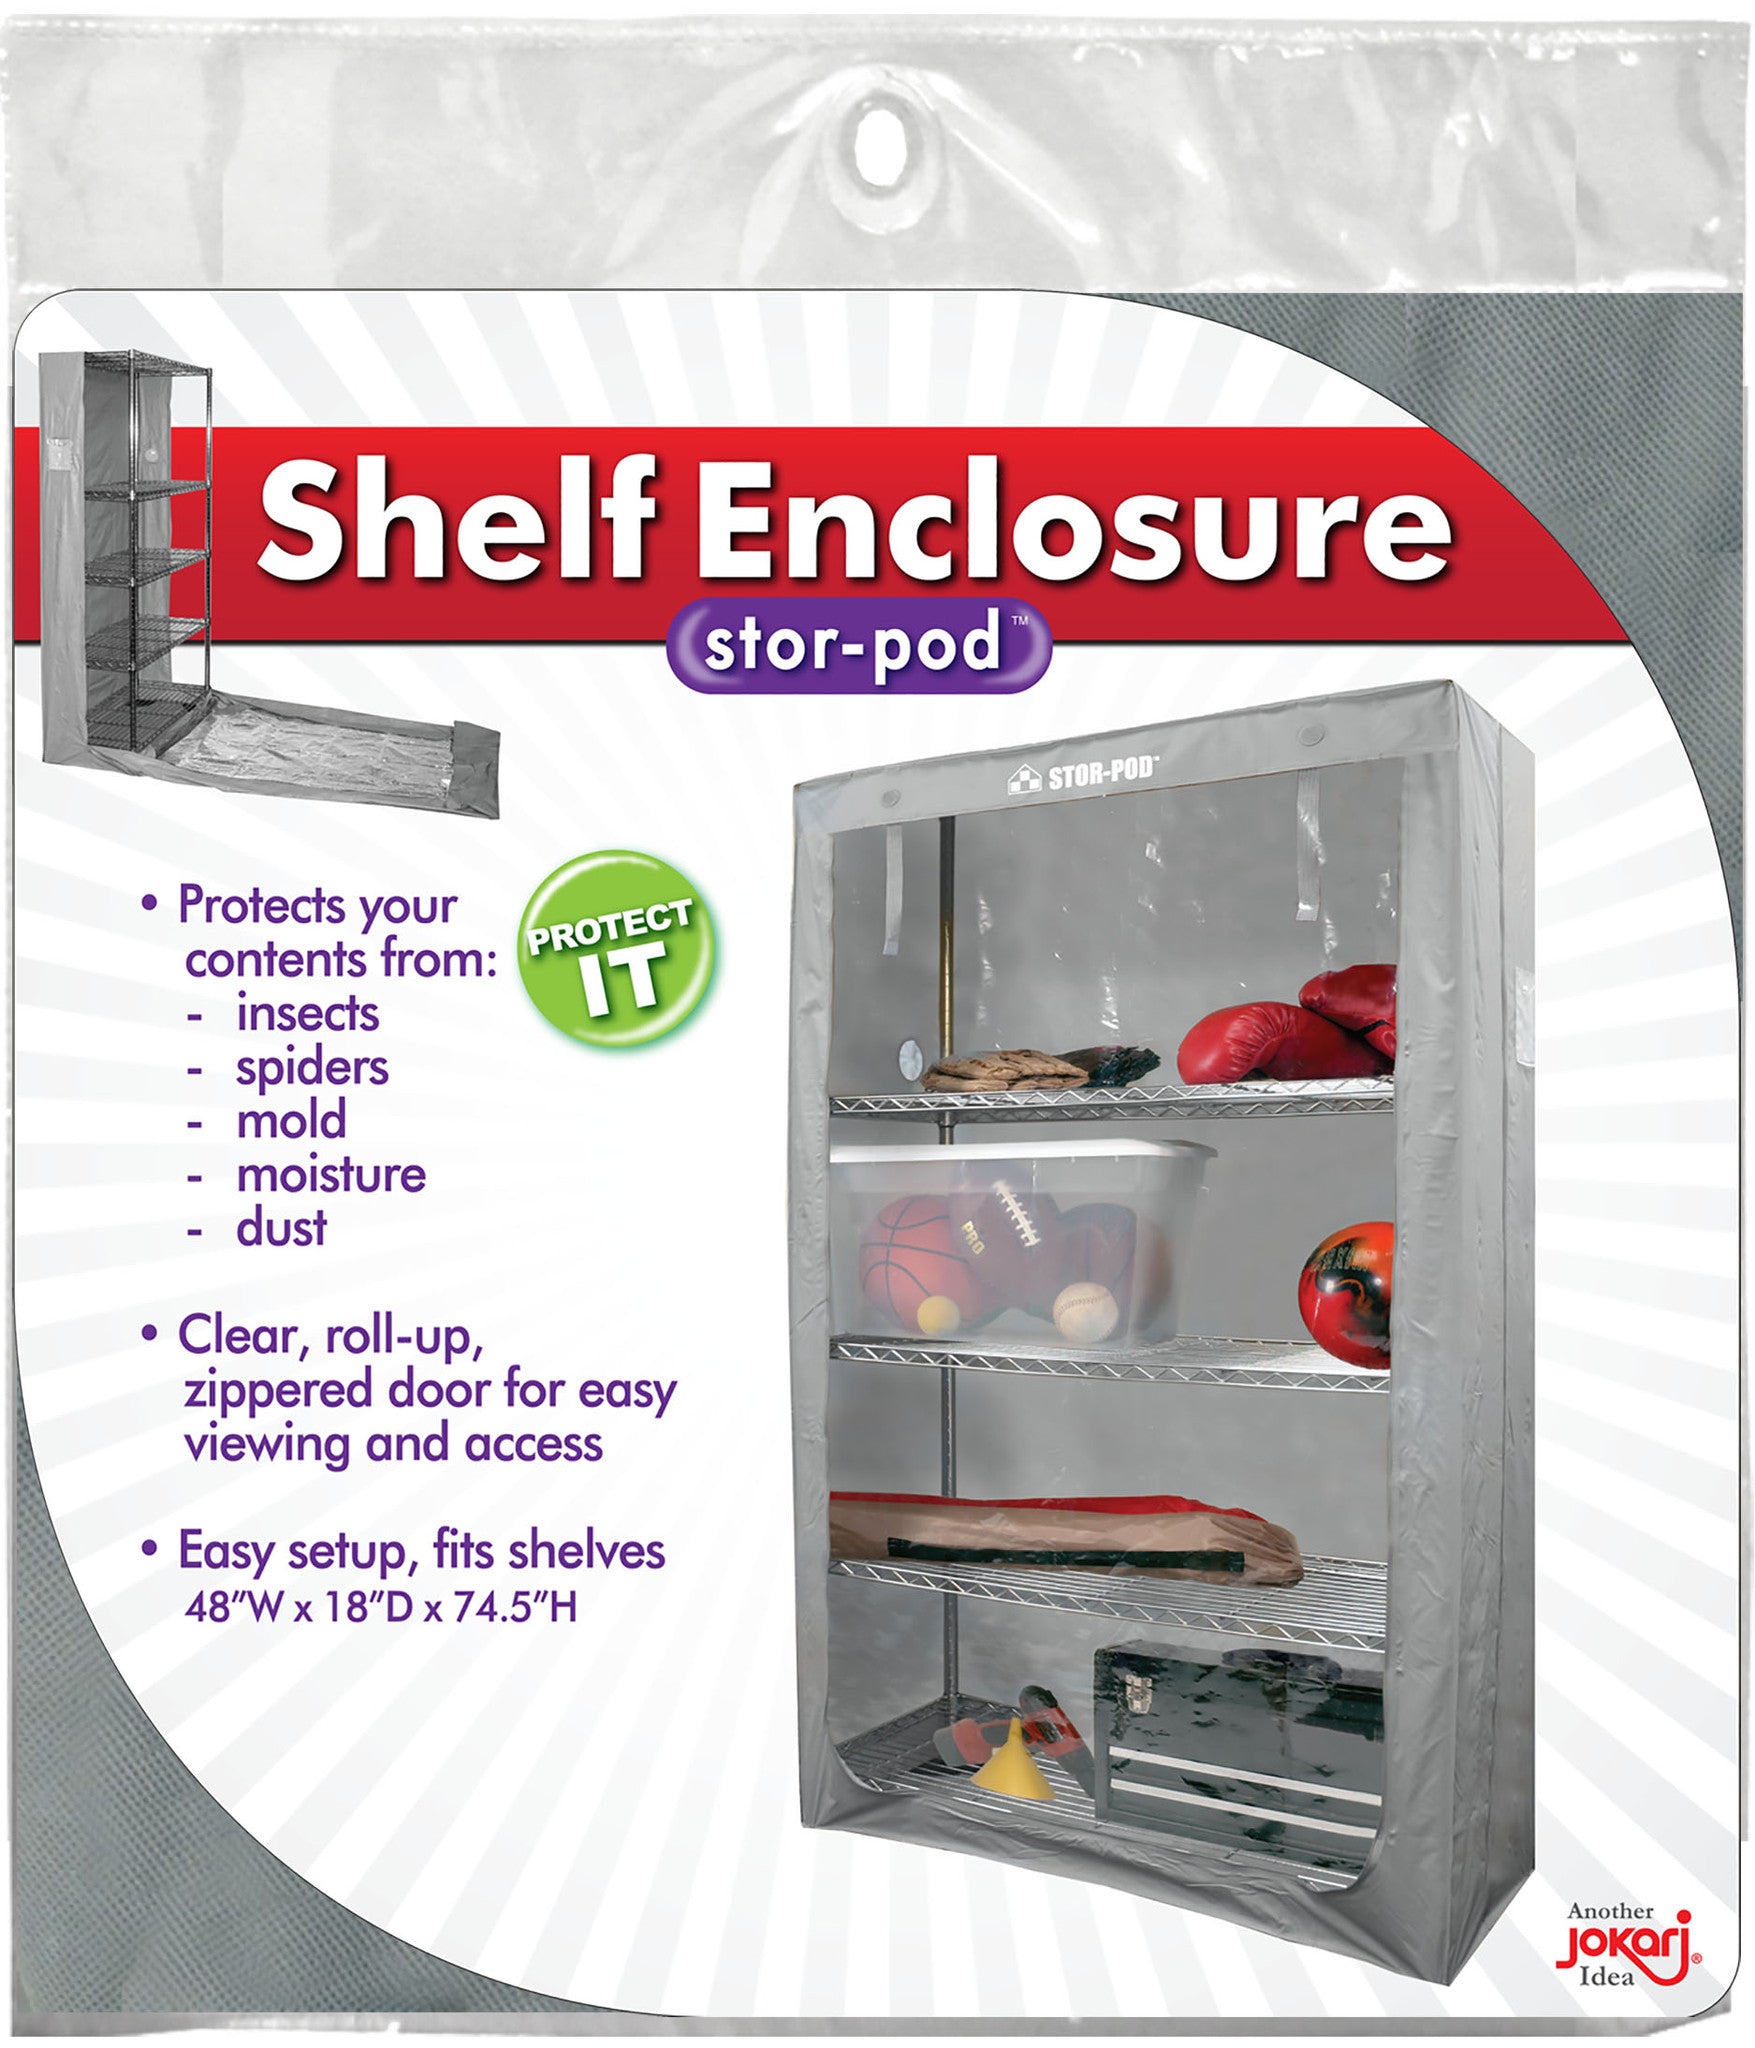 Shelf Enclosure